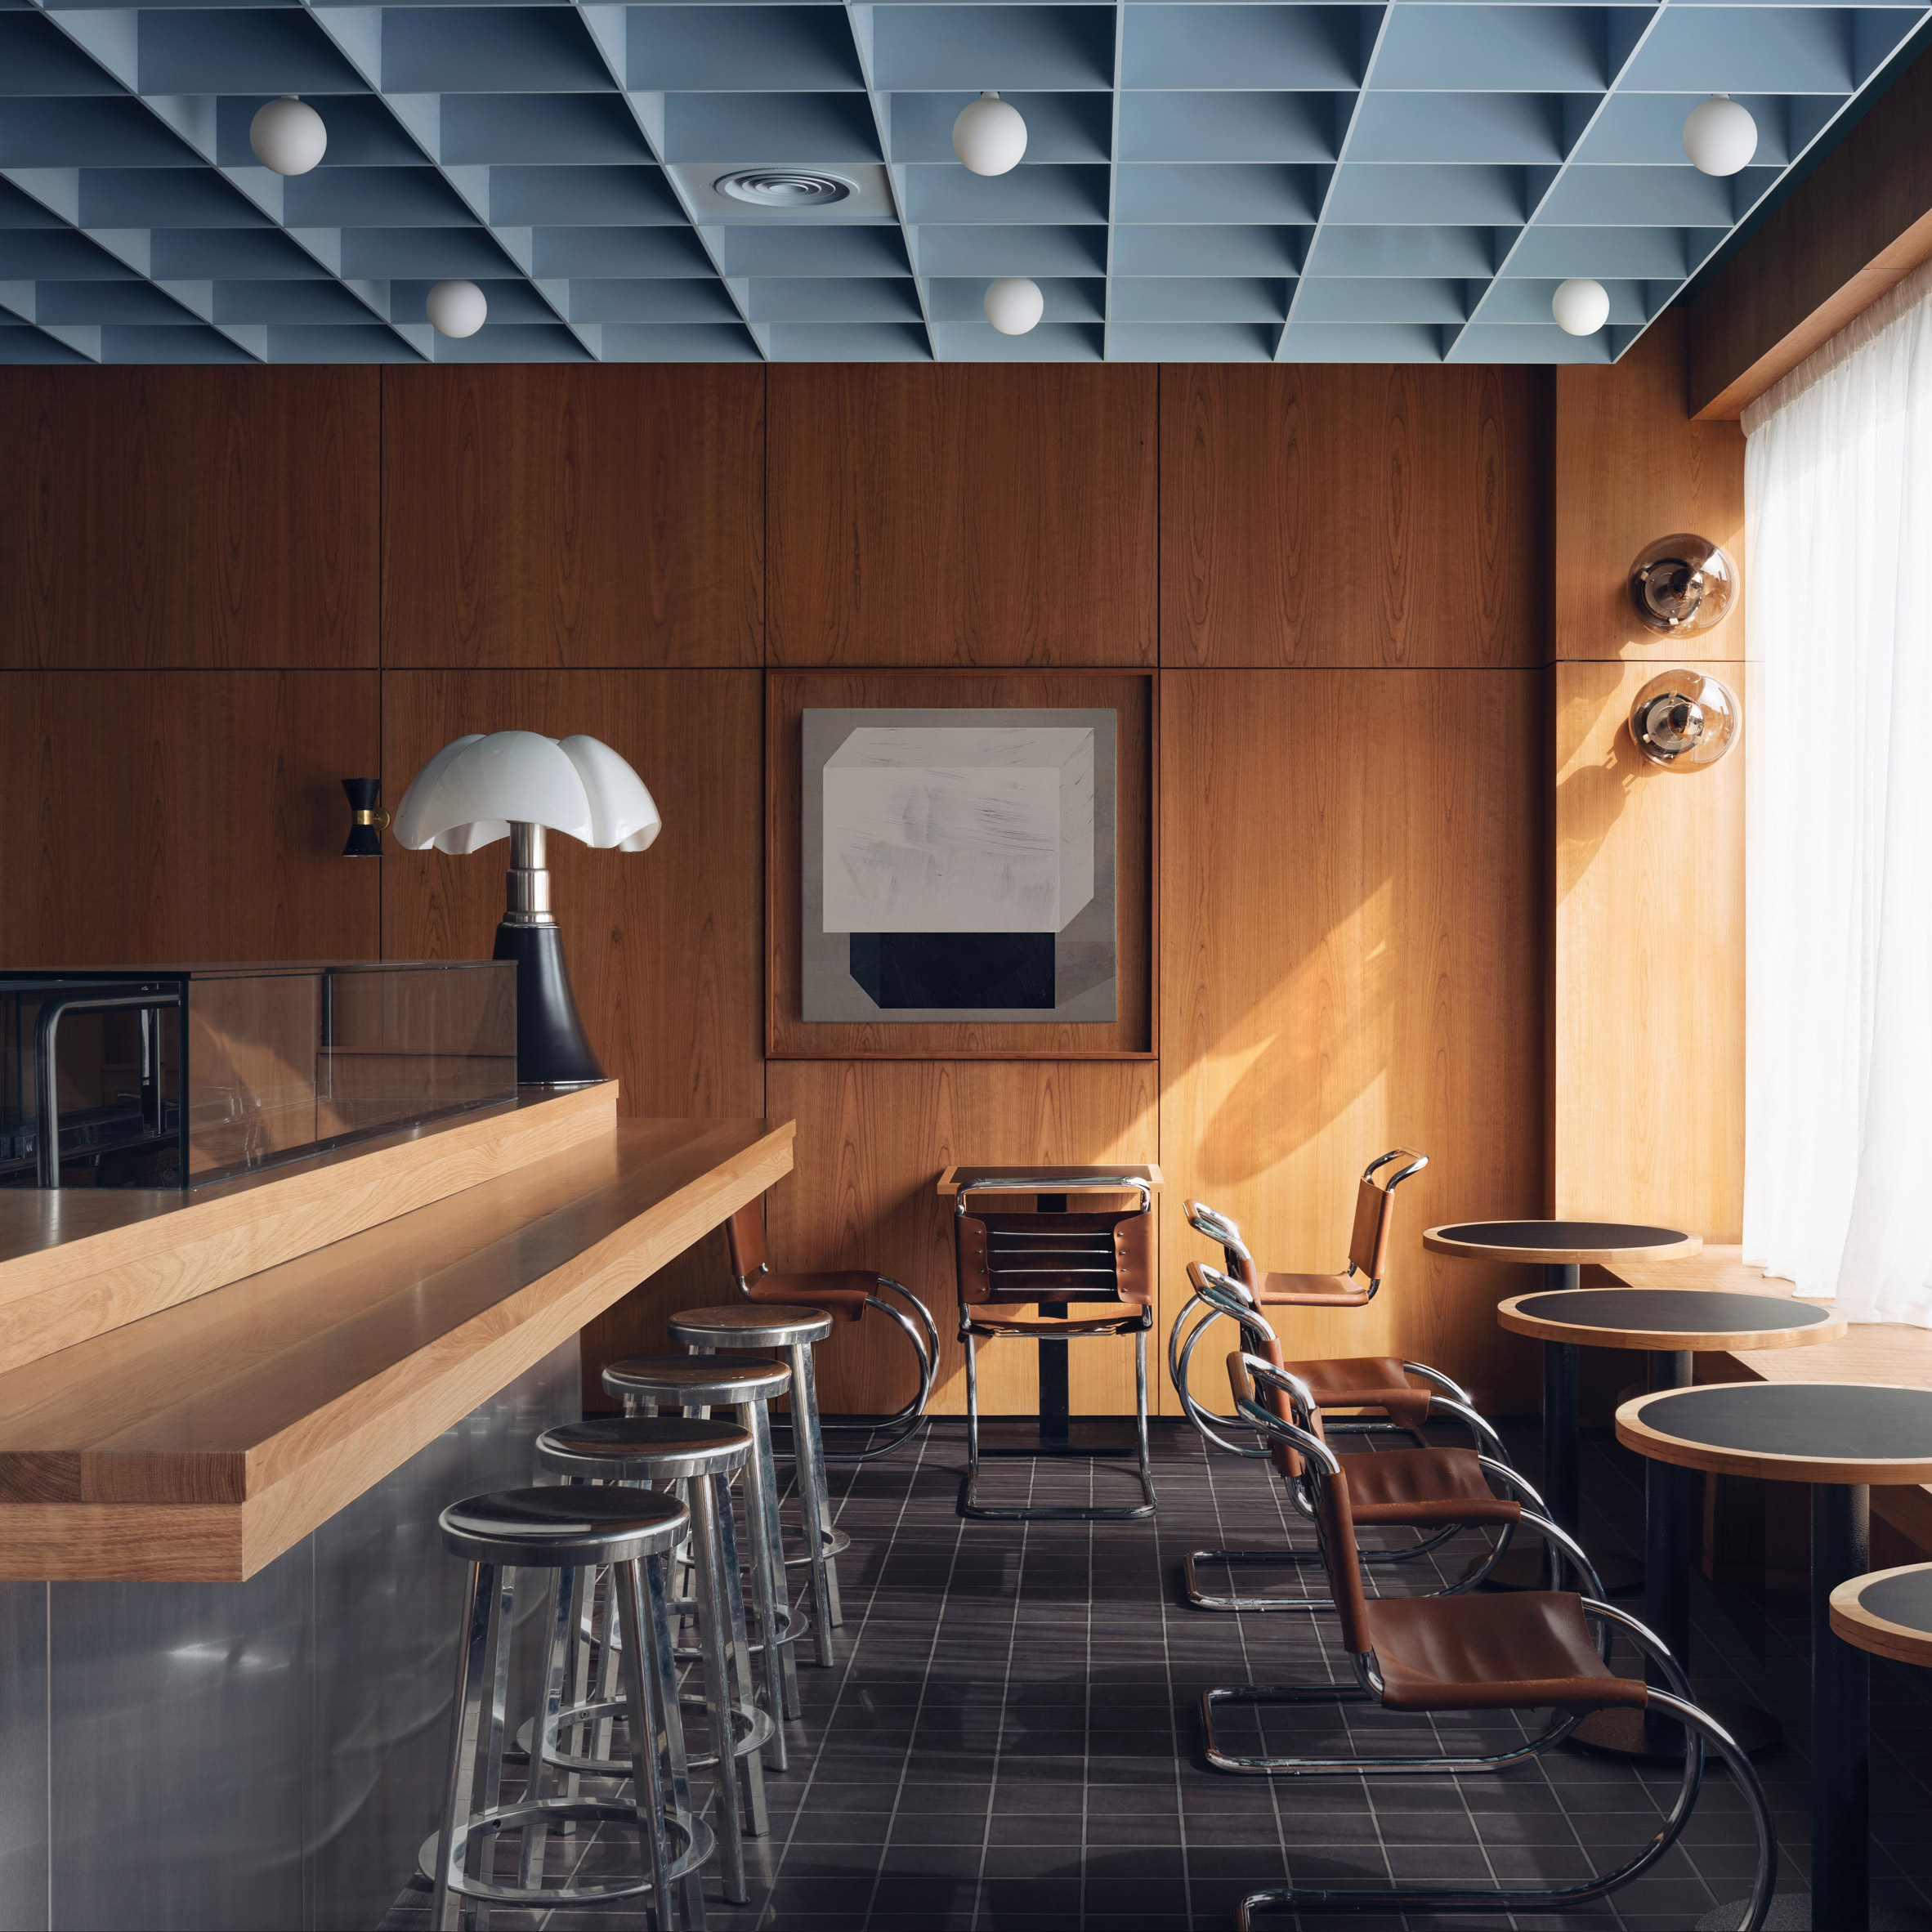 futuristic interior design cafe